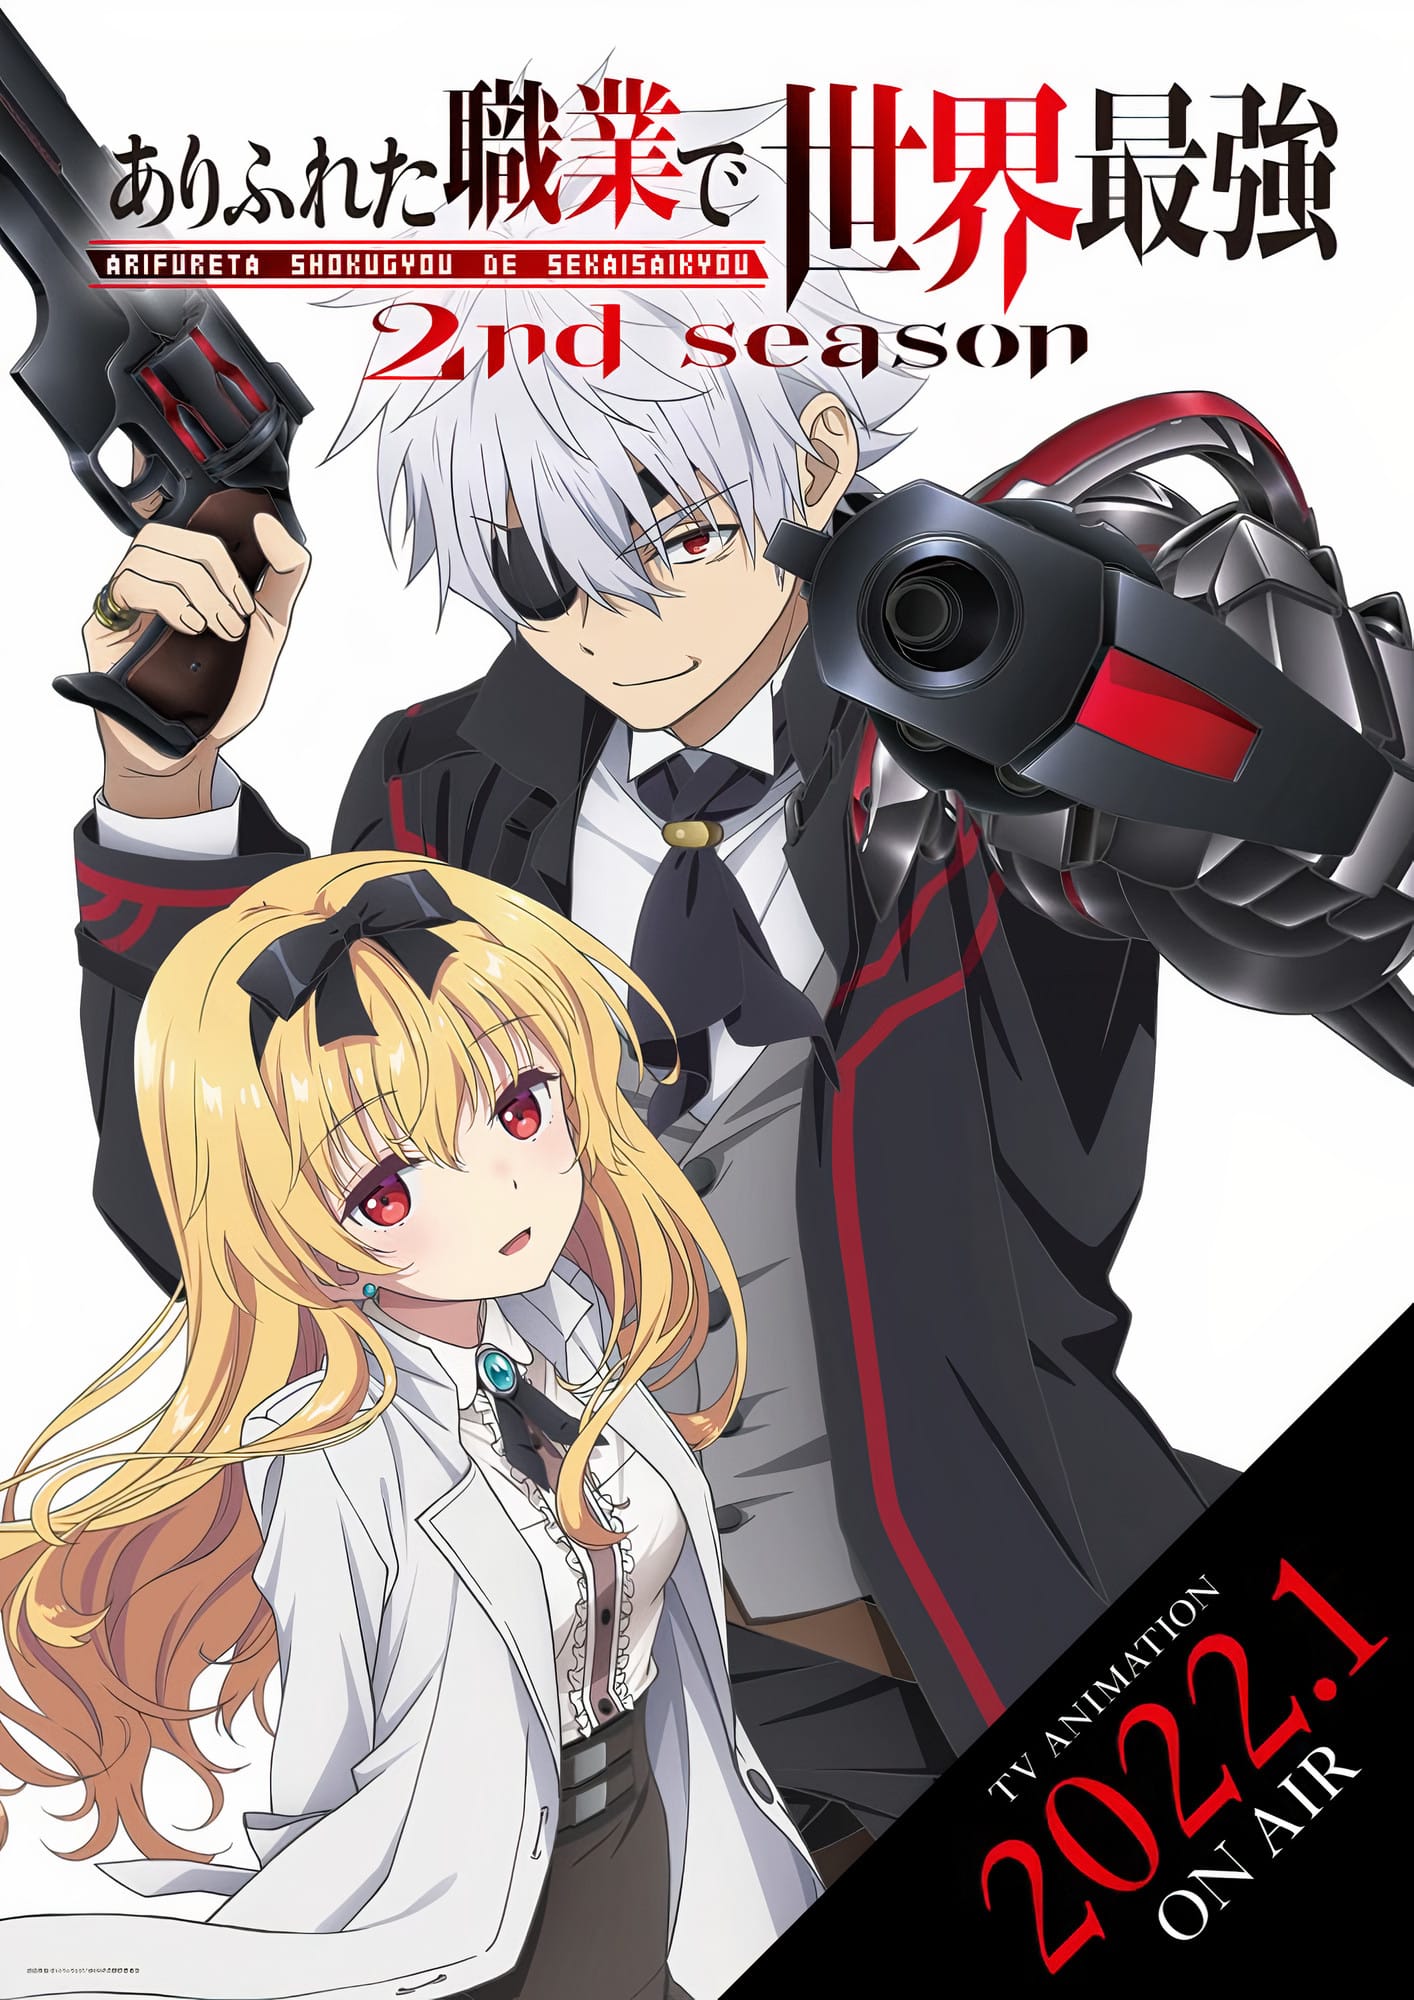 Annonce de la date de sortie de anime Arifureta Saison 2